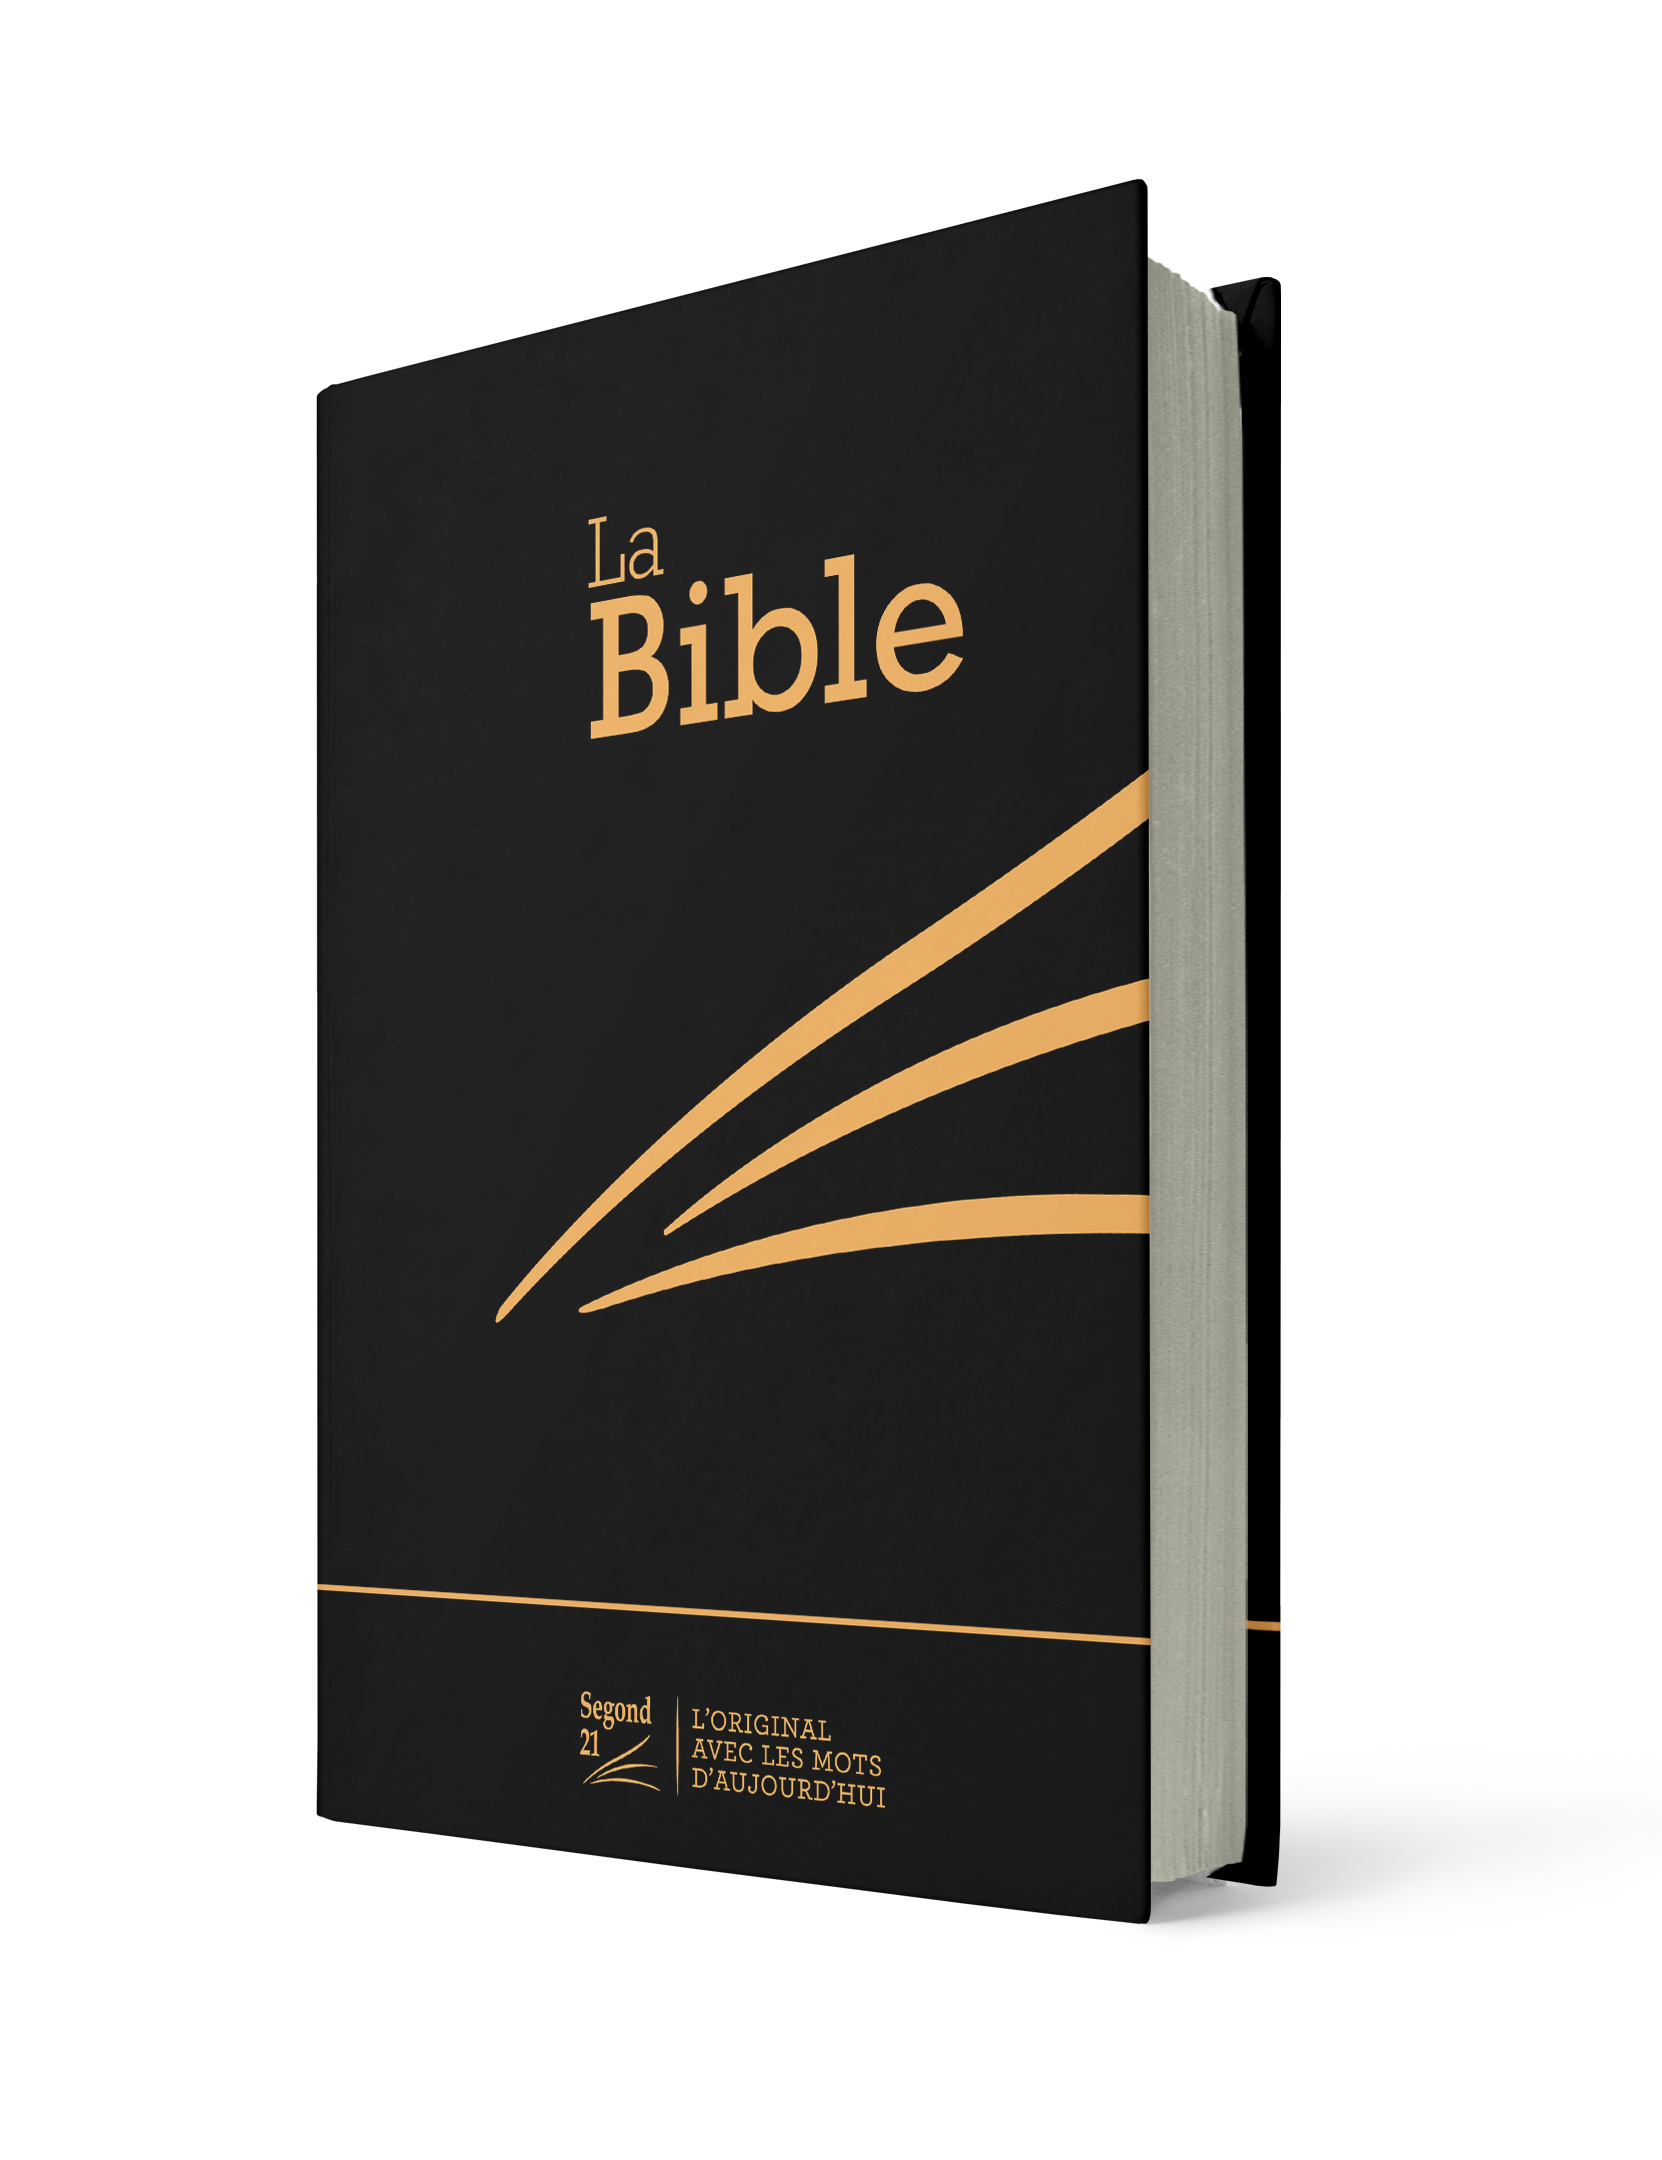 Bible Segond 21 compacte noir - couverture rigide Skyvertex